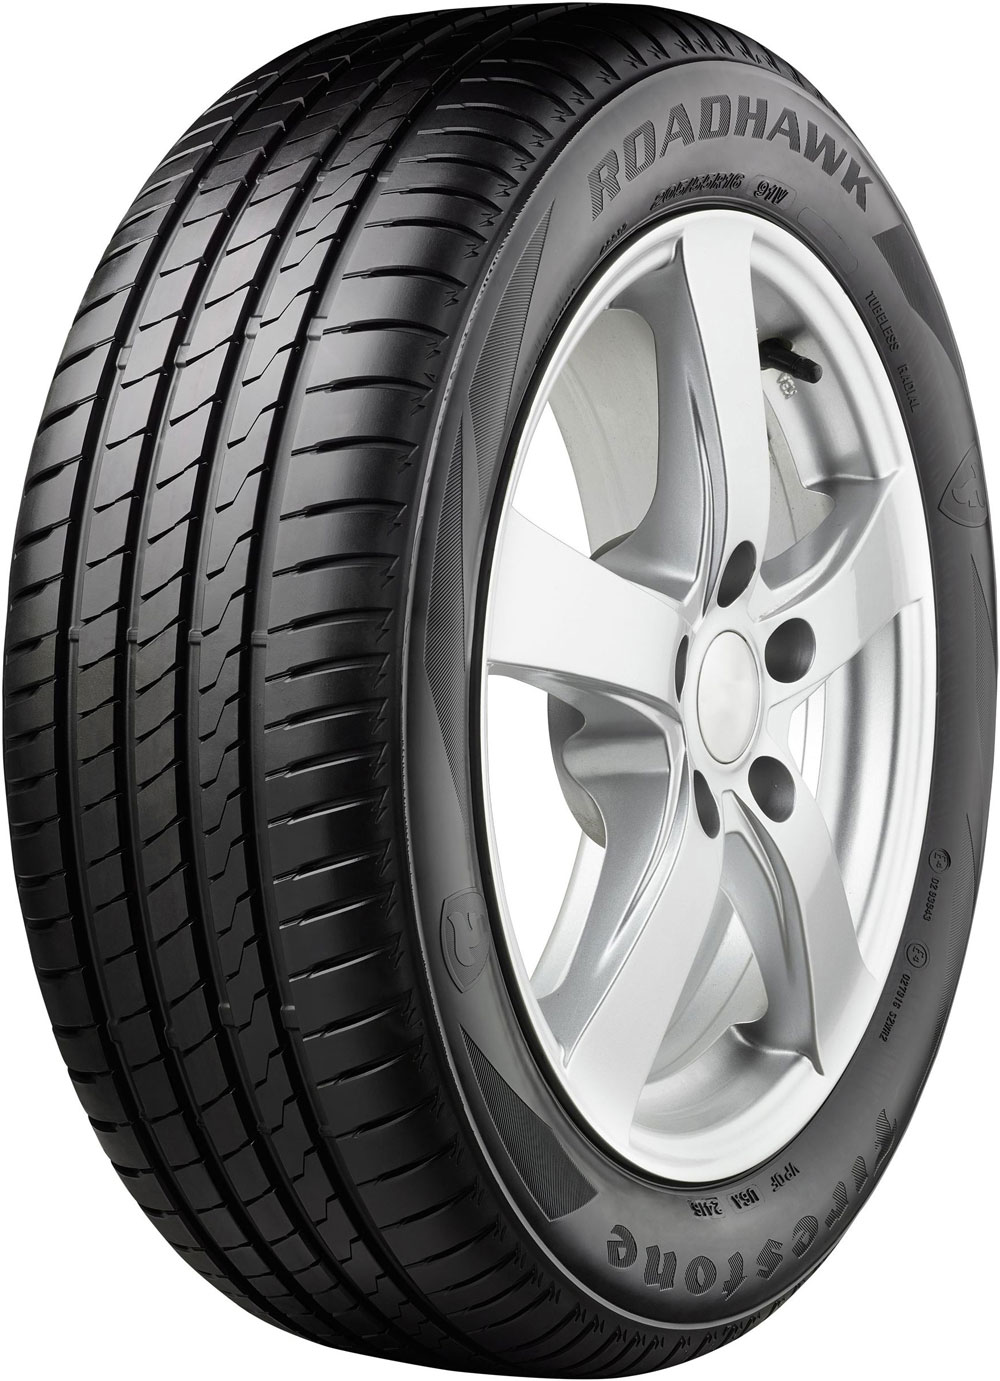 Автомобилни гуми FIRESTONE ROADHAWK XL XL FP 245/45 R17 99Y